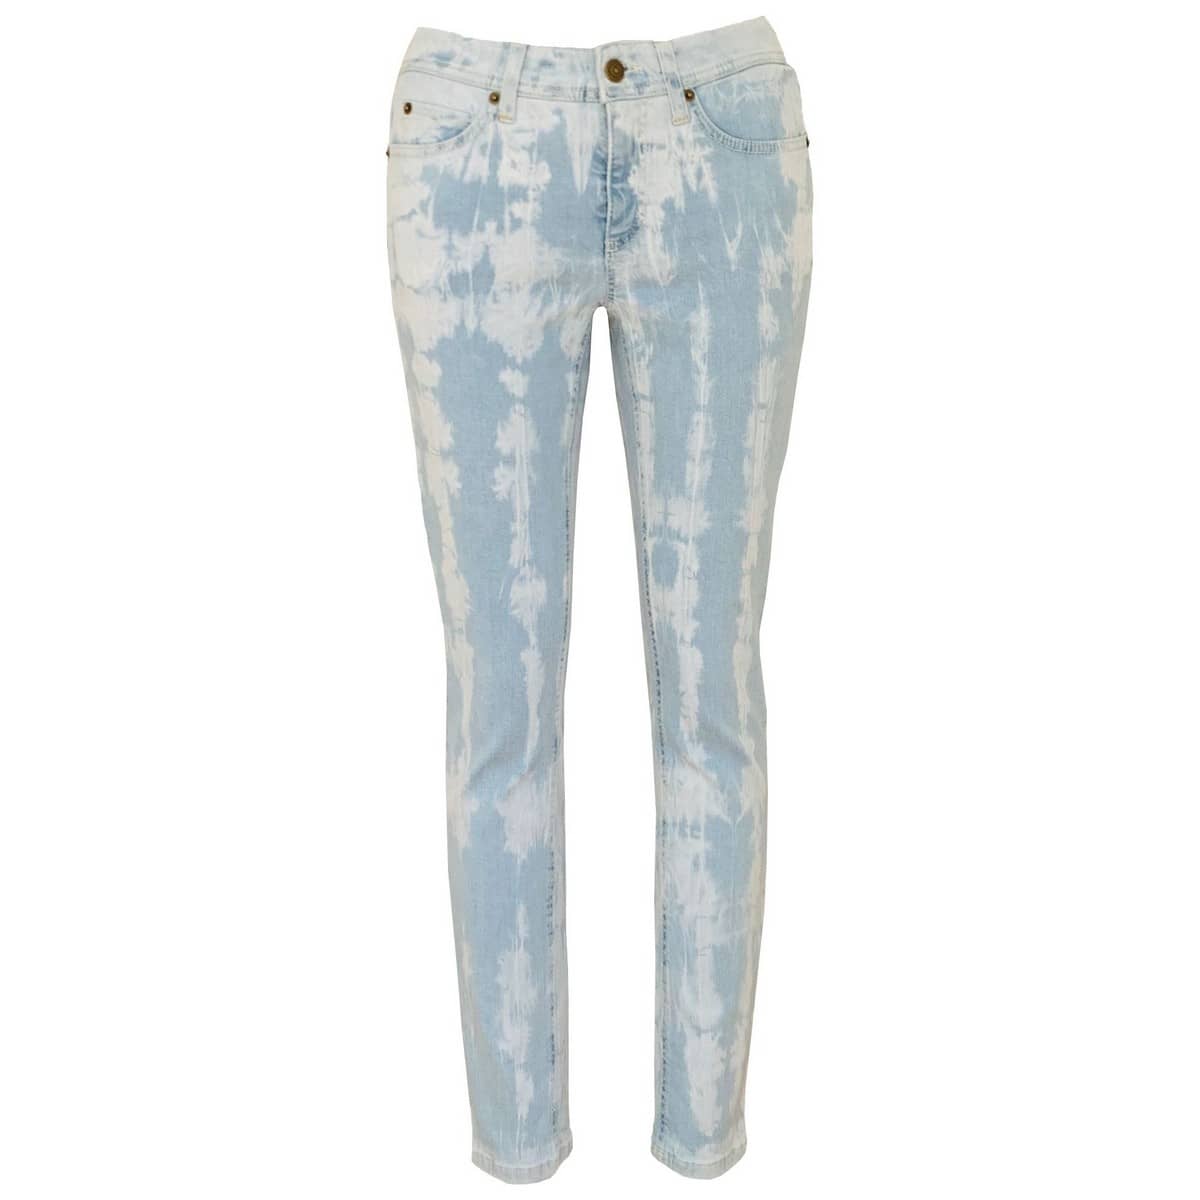 Onbepaald Groene bonen bundel Cambio • blauw Parla jeans met tie dye • shop BollyWolly